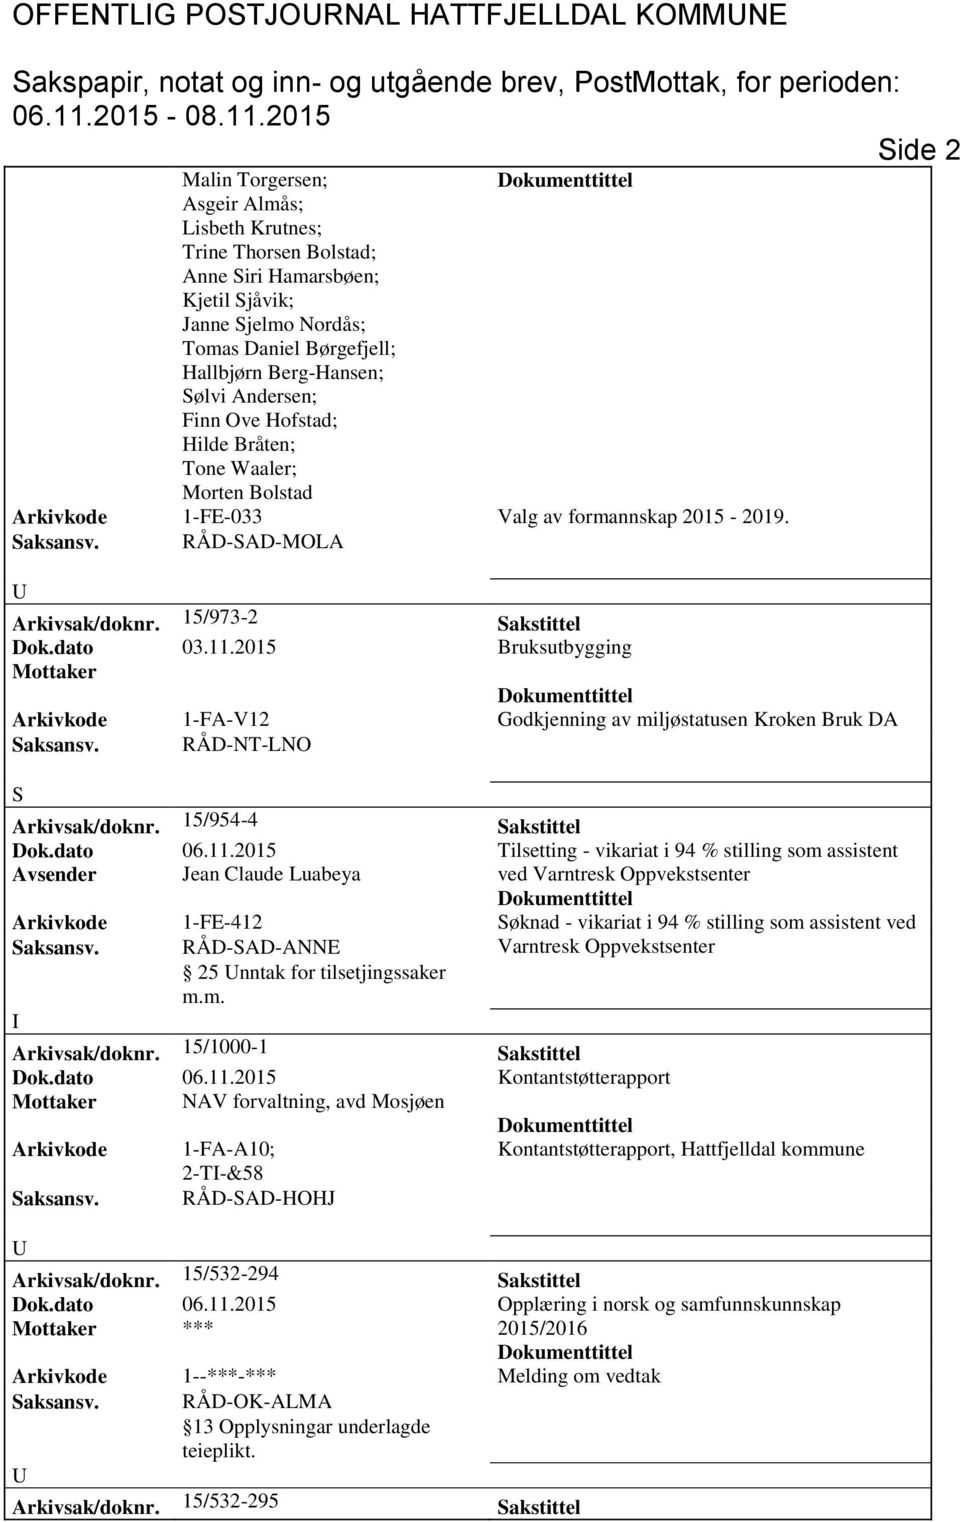 2015 Bruksutbygging Mottaker Arkivkode 1-FA-V12 Godkjenning av miljøstatusen Kroken Bruk DA Saksansv. RÅD-NT-LNO S Arkivsak/doknr. 15/954-4 Sakstittel Dok.dato 06.11.